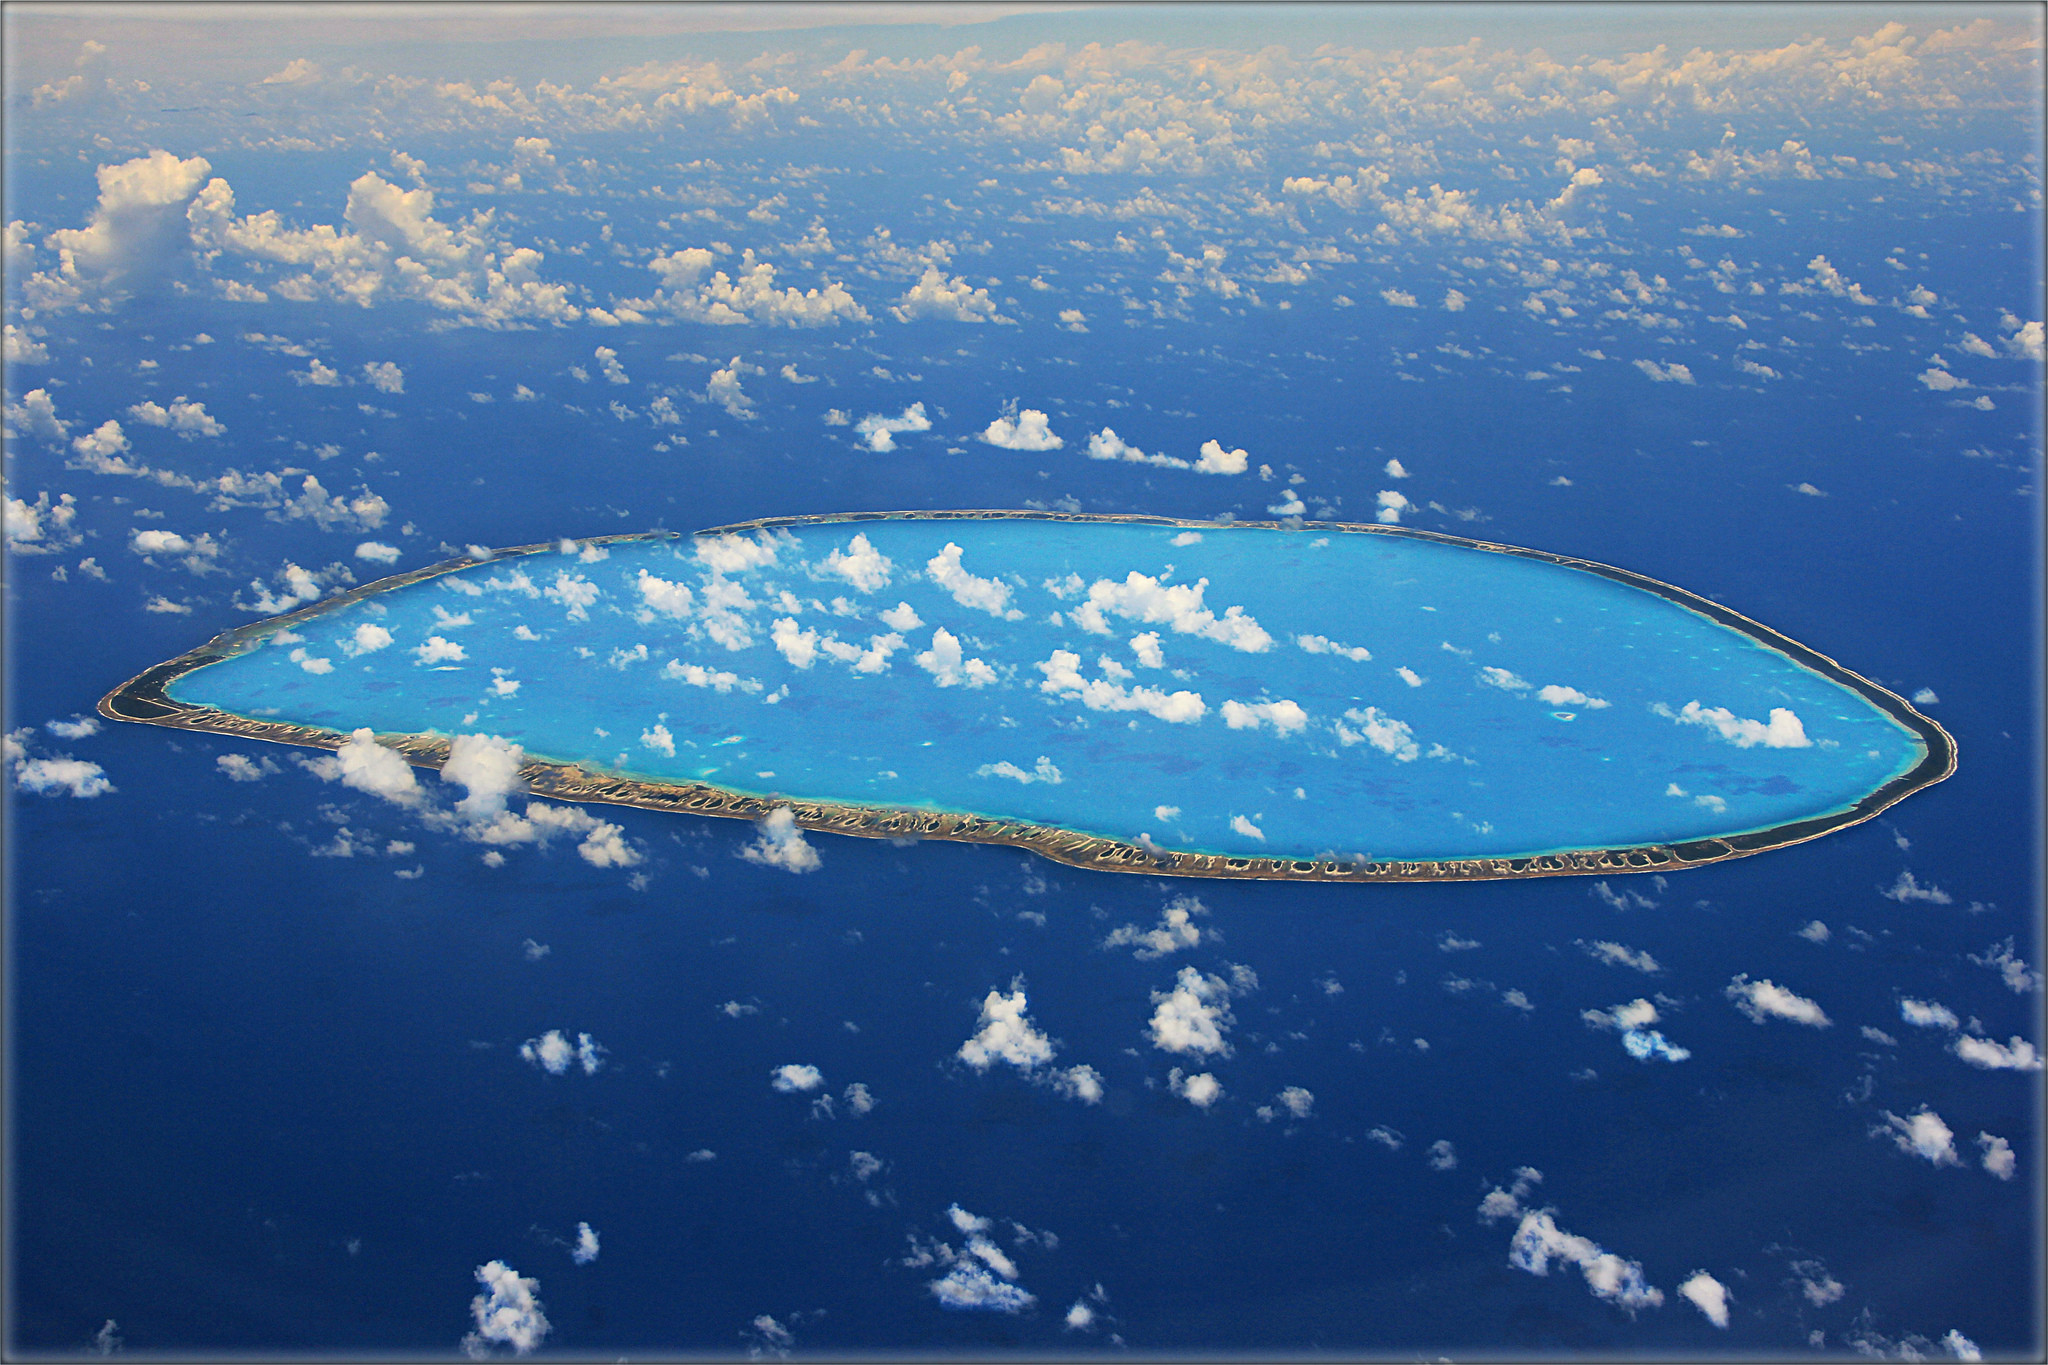 Барьерные острова. Коралловый остров Туамоту. Архипелаг Туамоту острова россиян. Остров в архипелаге Туамоту Беллинсгаузен. Атолл в тихом океане.